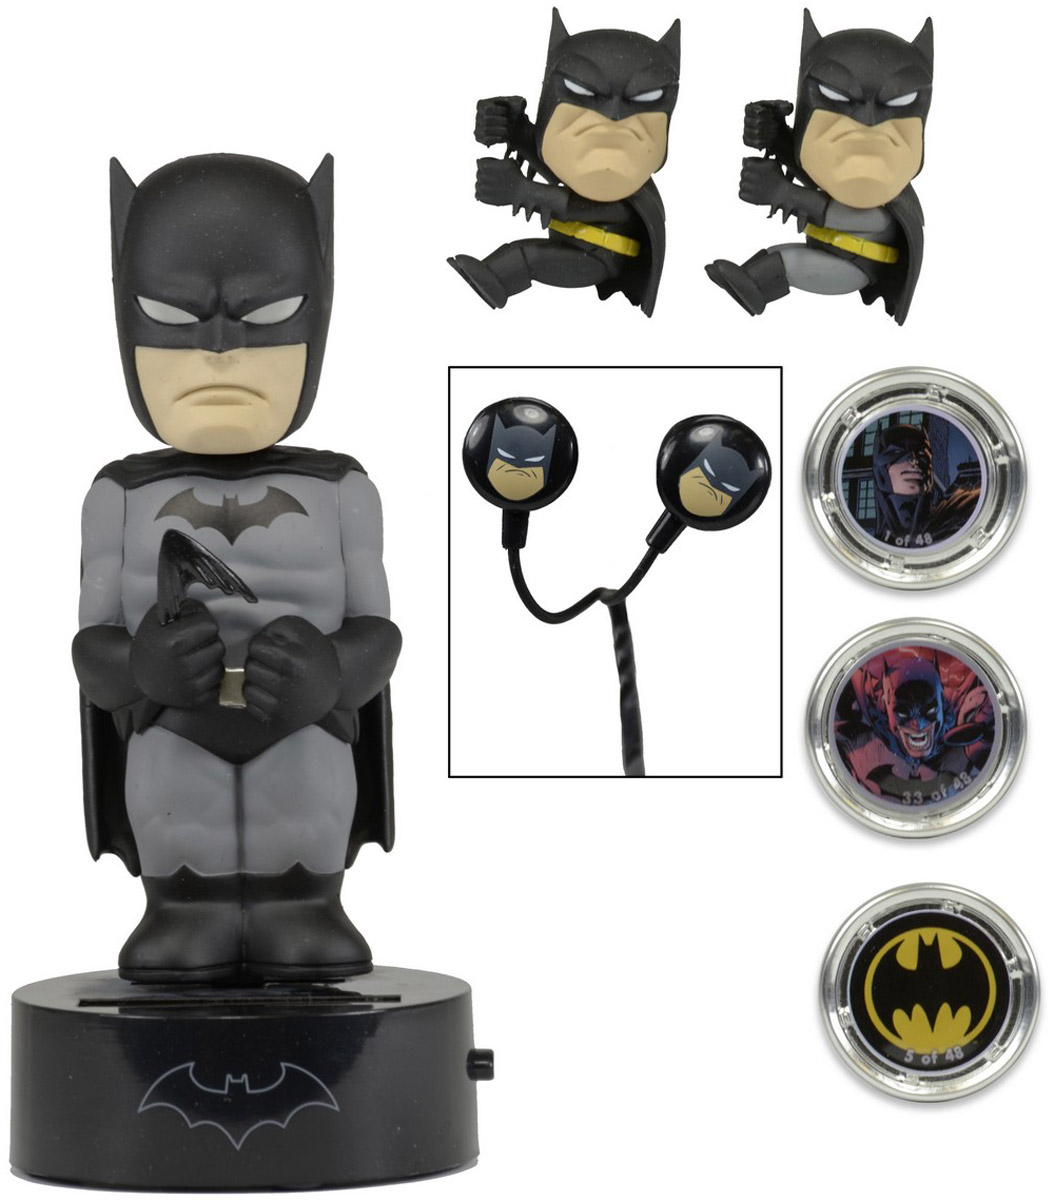 Neca Набор подарочный DC Comics Limited Edition Batman фигурка 15 см наушники держатели проводов 3 жетона-биты